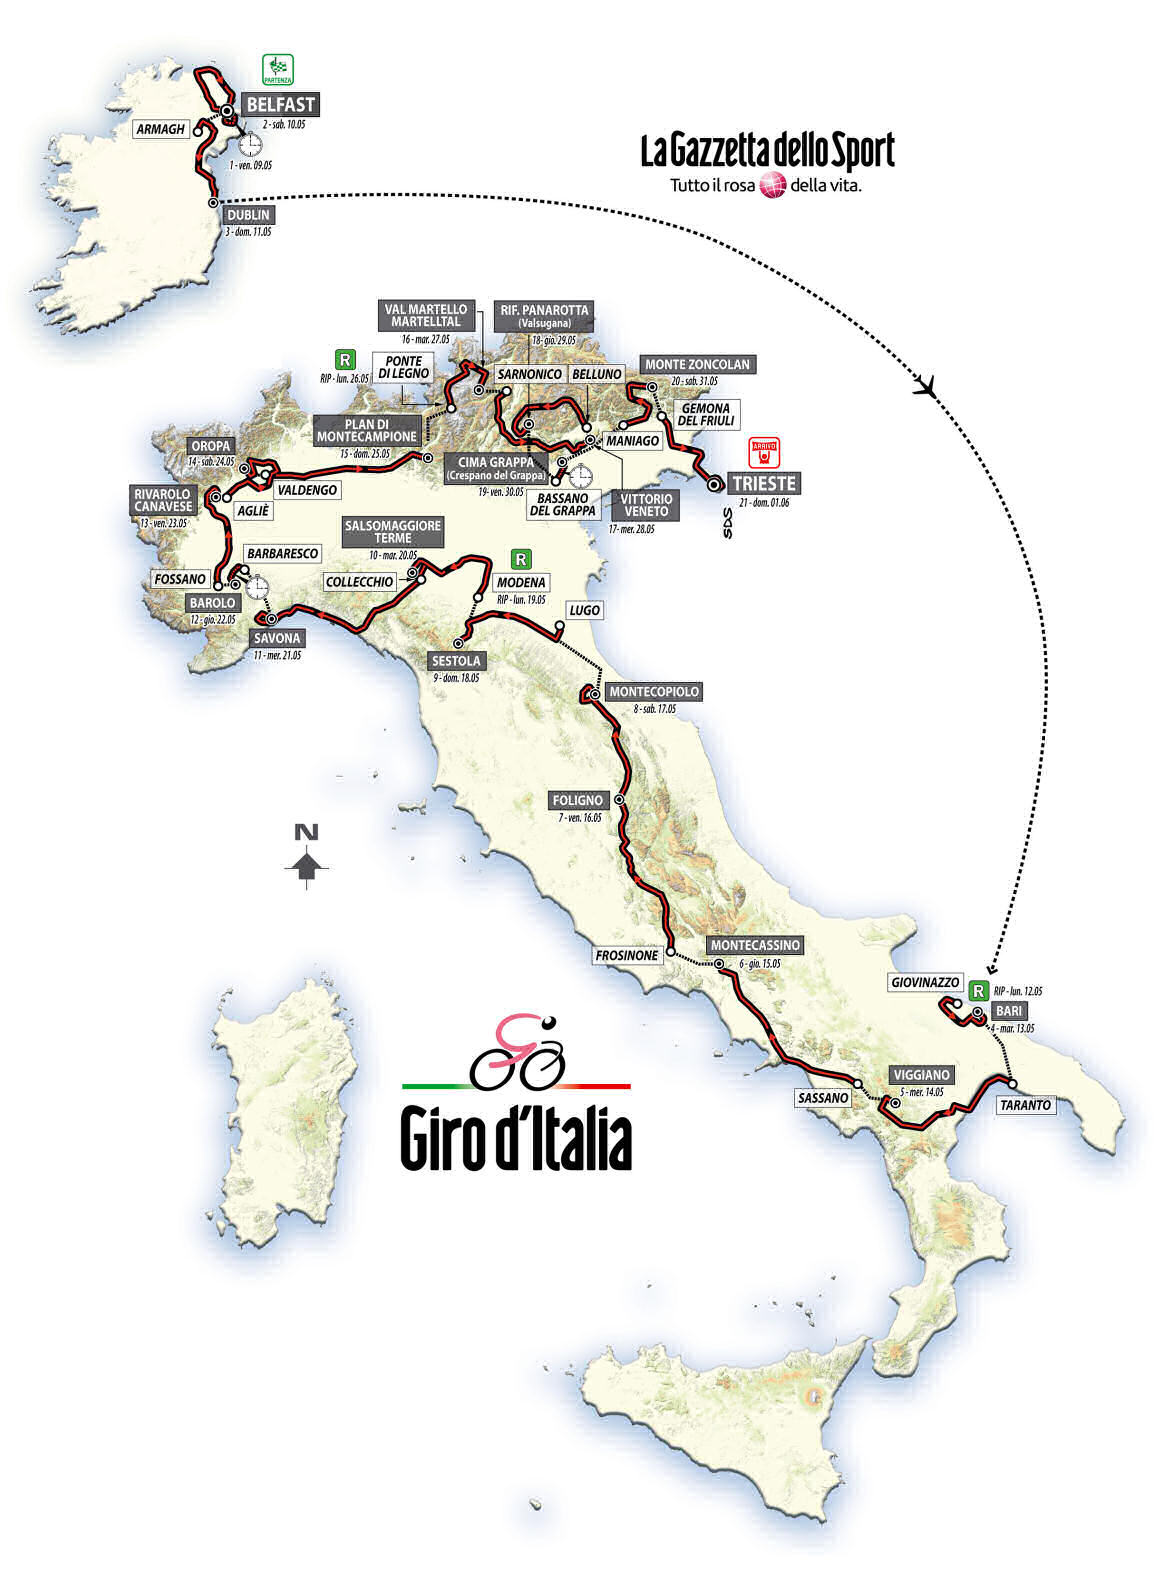 Giro 2014 map - large